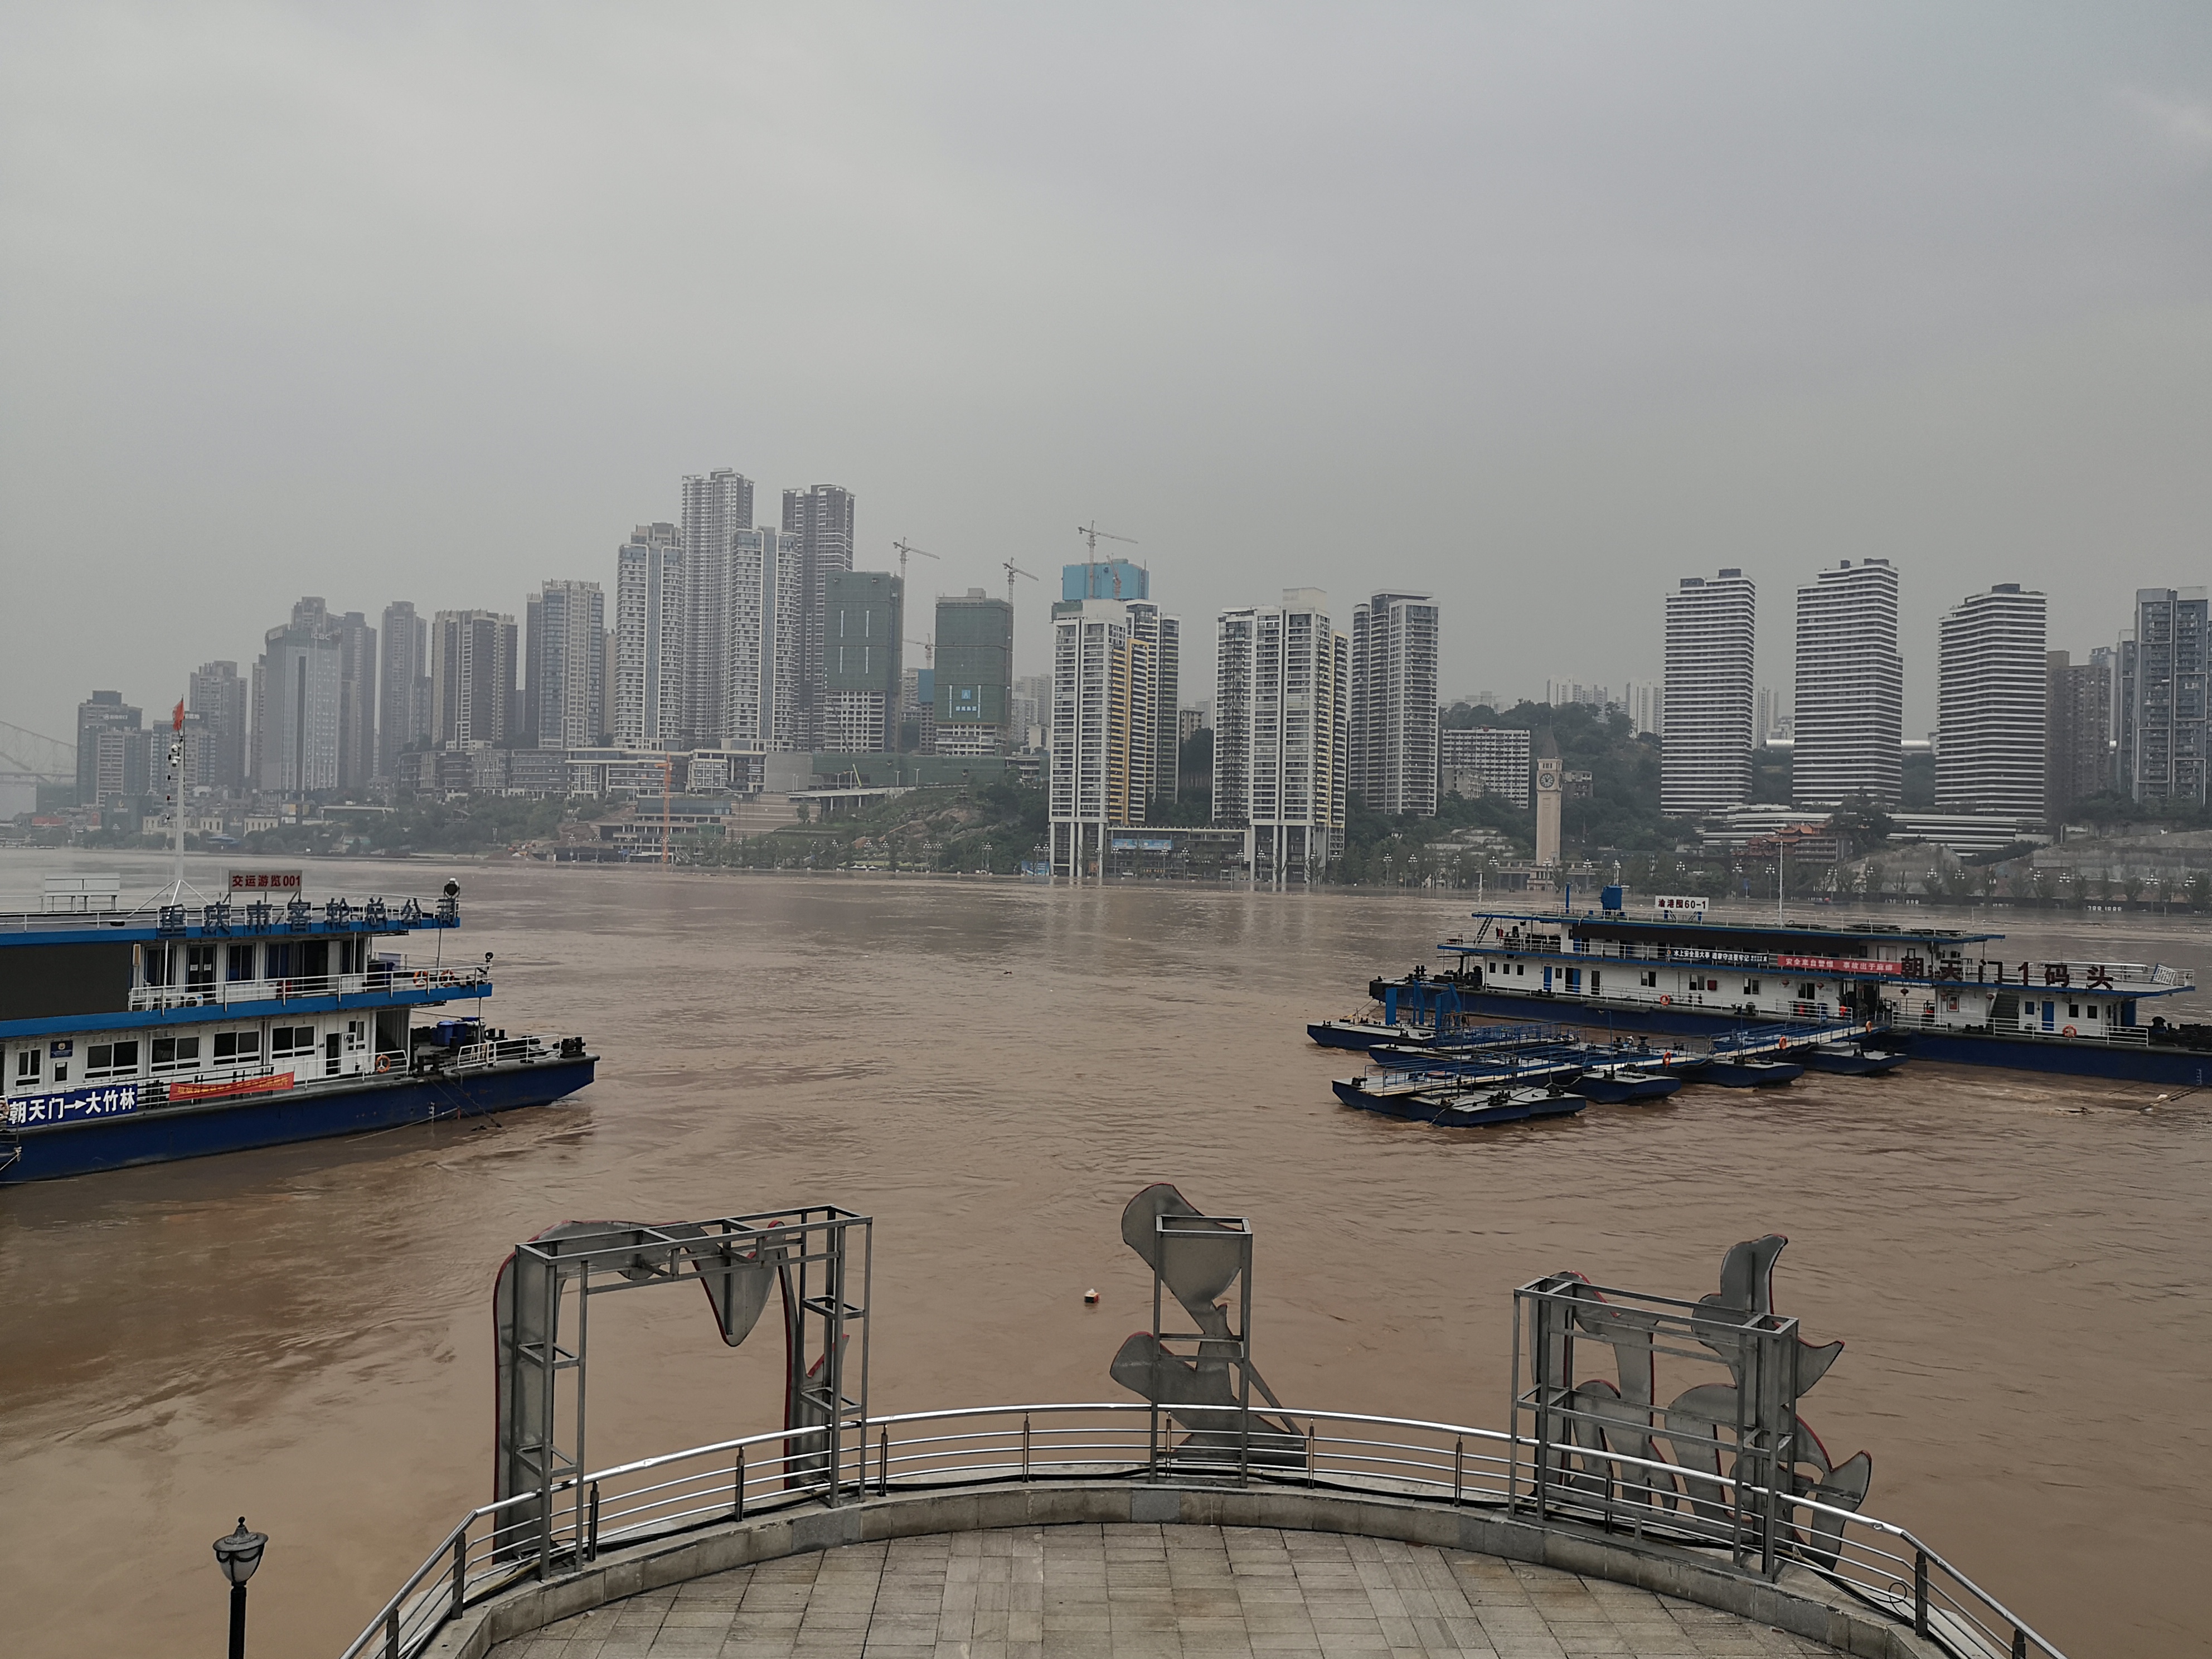 朝天门城门洞区域被淹没。 本文图片除署名外，均由澎湃新闻记者 王鑫 图 